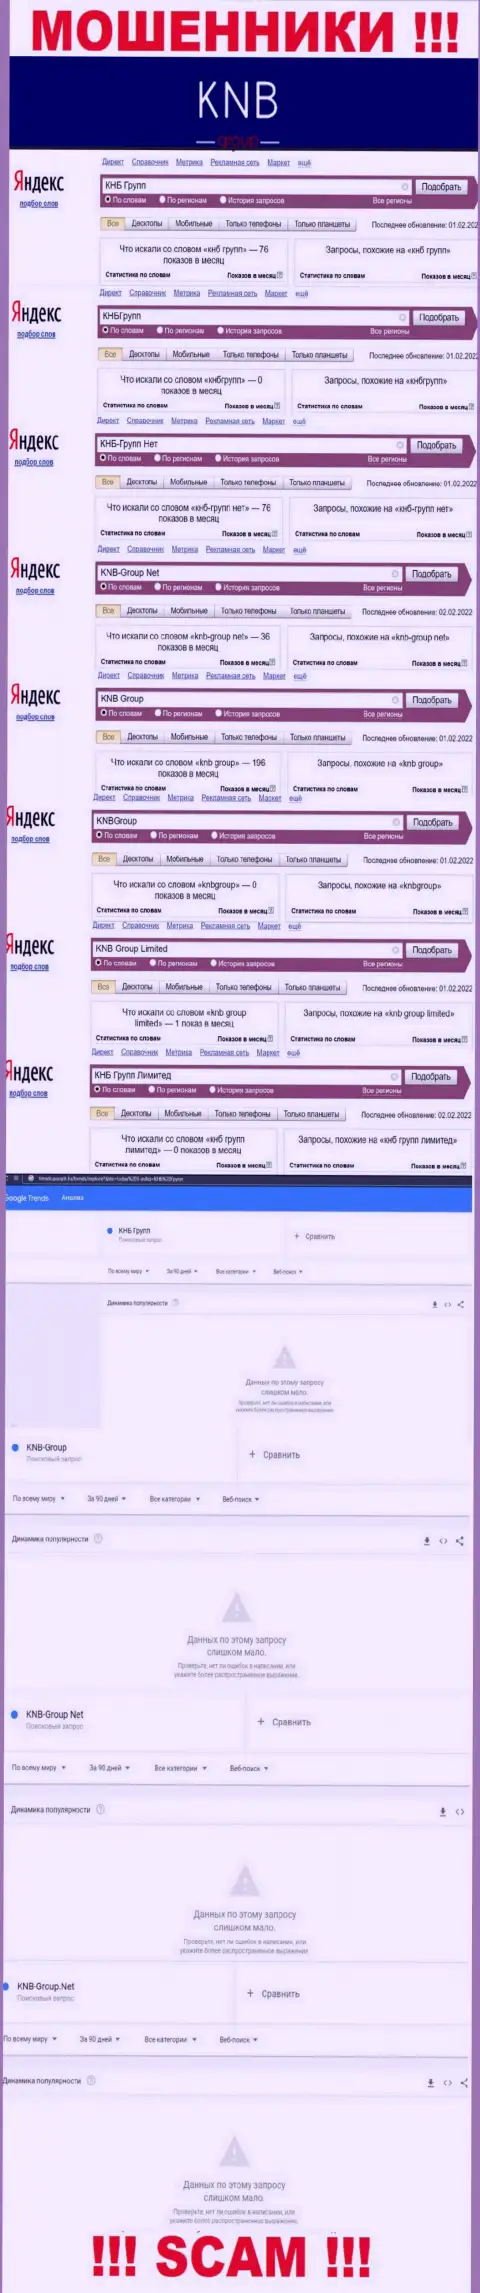 Скриншот результатов online-запросов по противозаконно действующей организации KNB Group